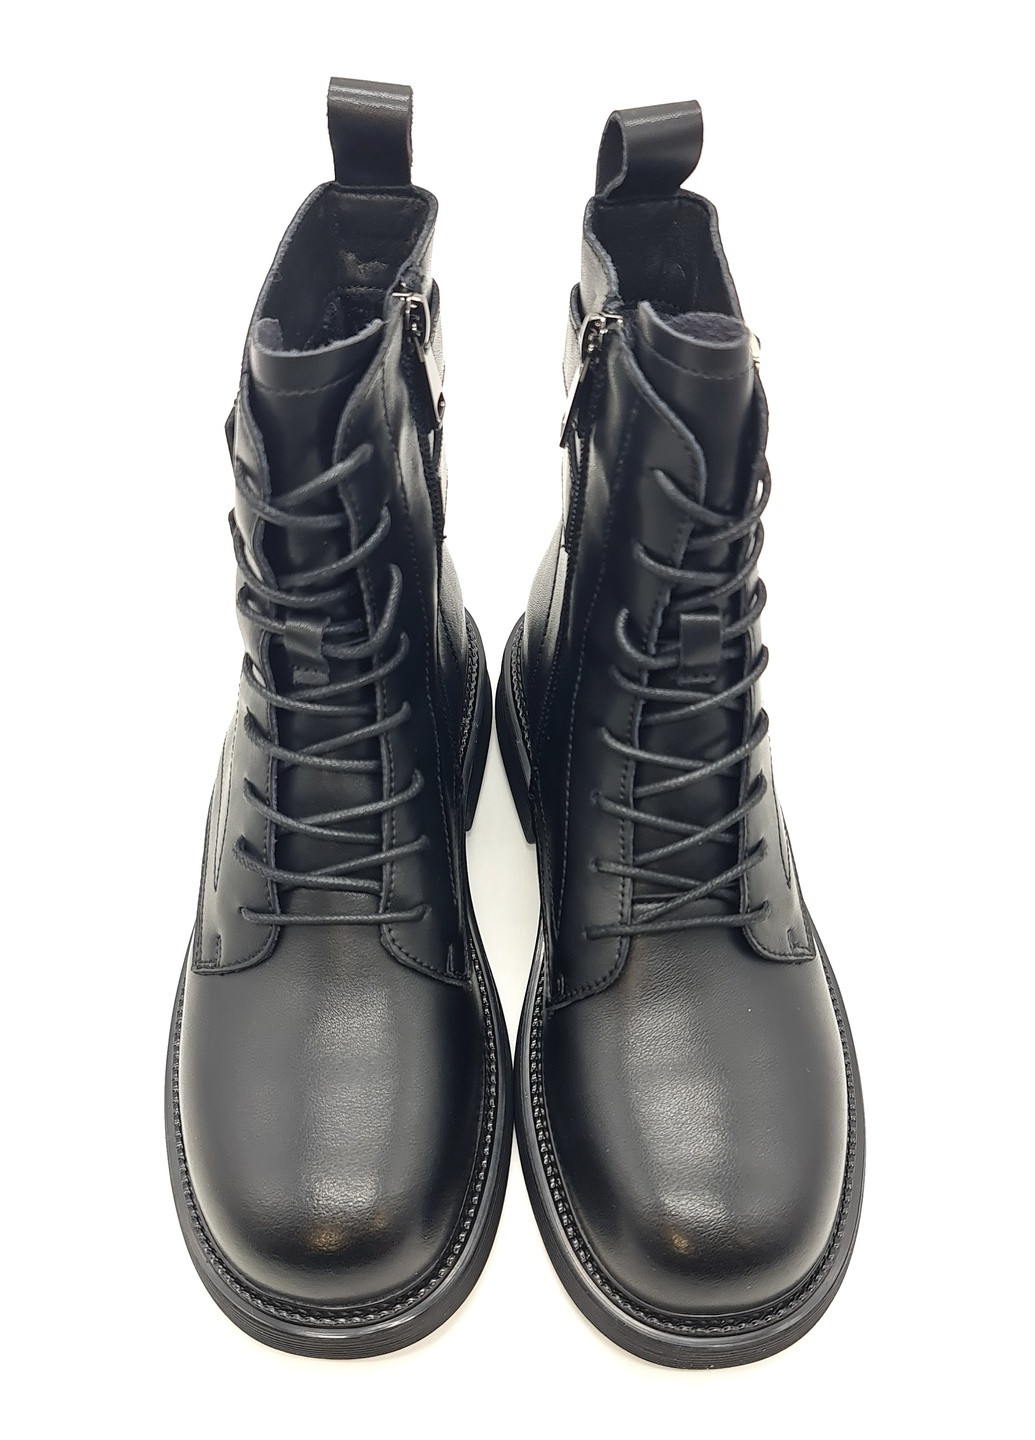 Осенние женские ботинки черные кожаные ya-12-2 23 см (р) Yalasou